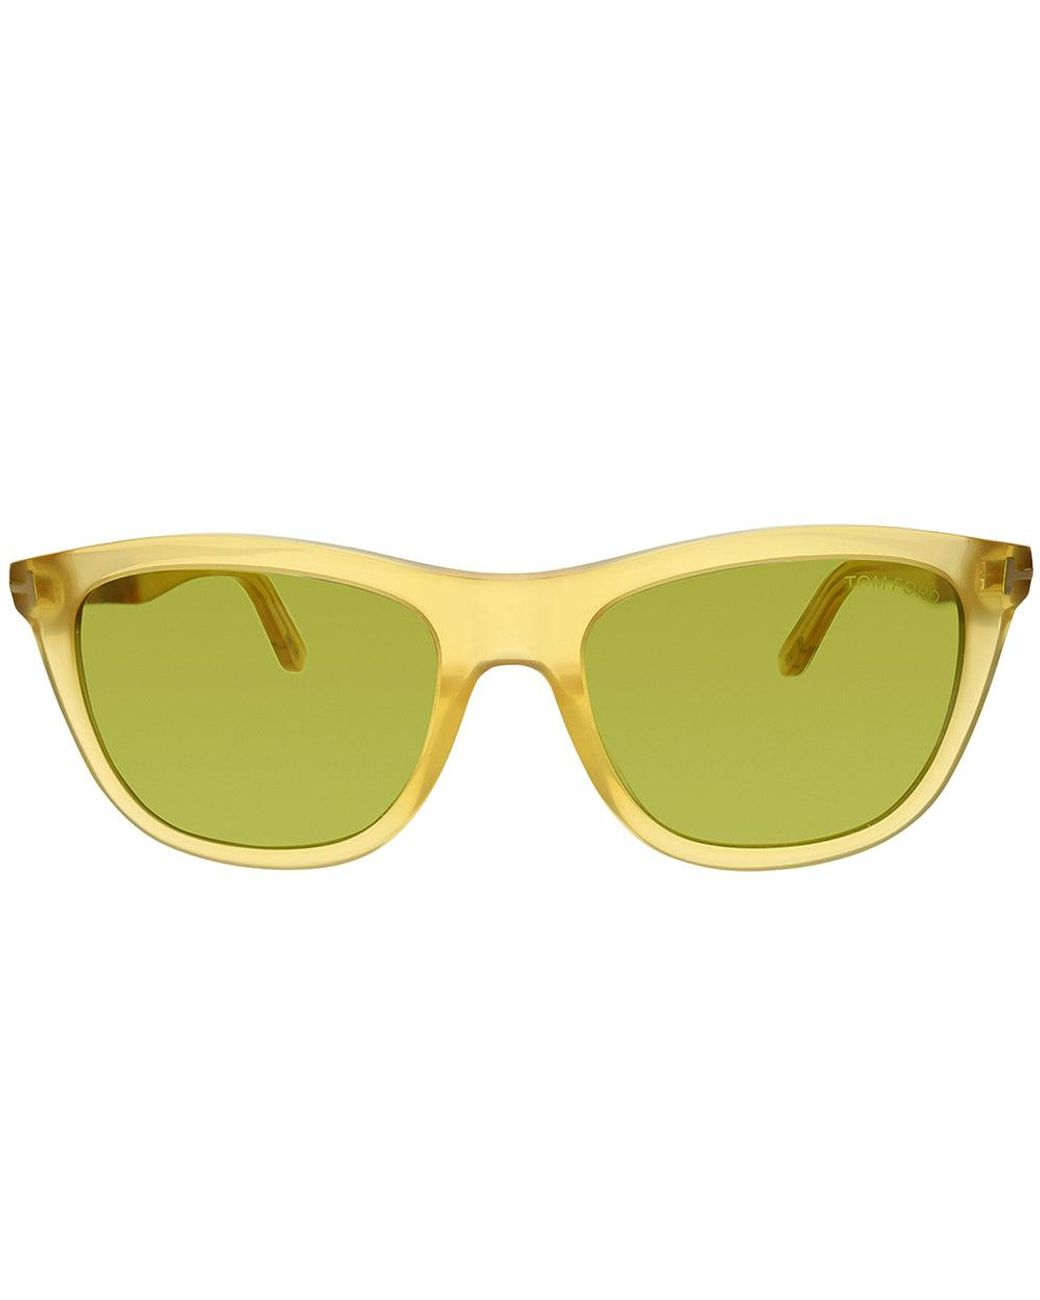 Tom Ford Andrew Brown Square Sunglasses FT0500 98E - Walmart.com